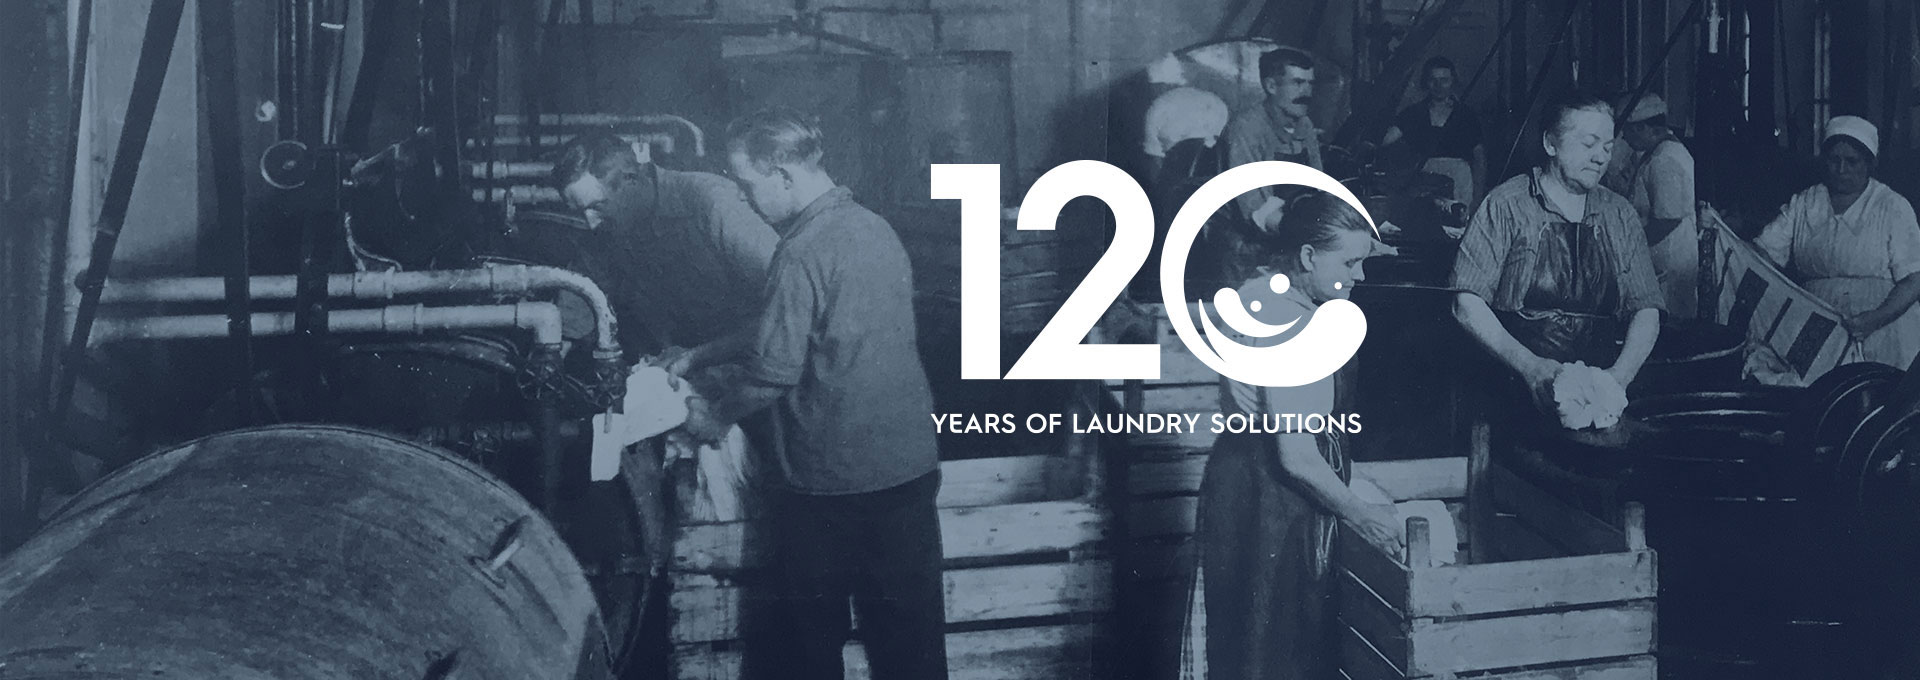 120 jaar laundry